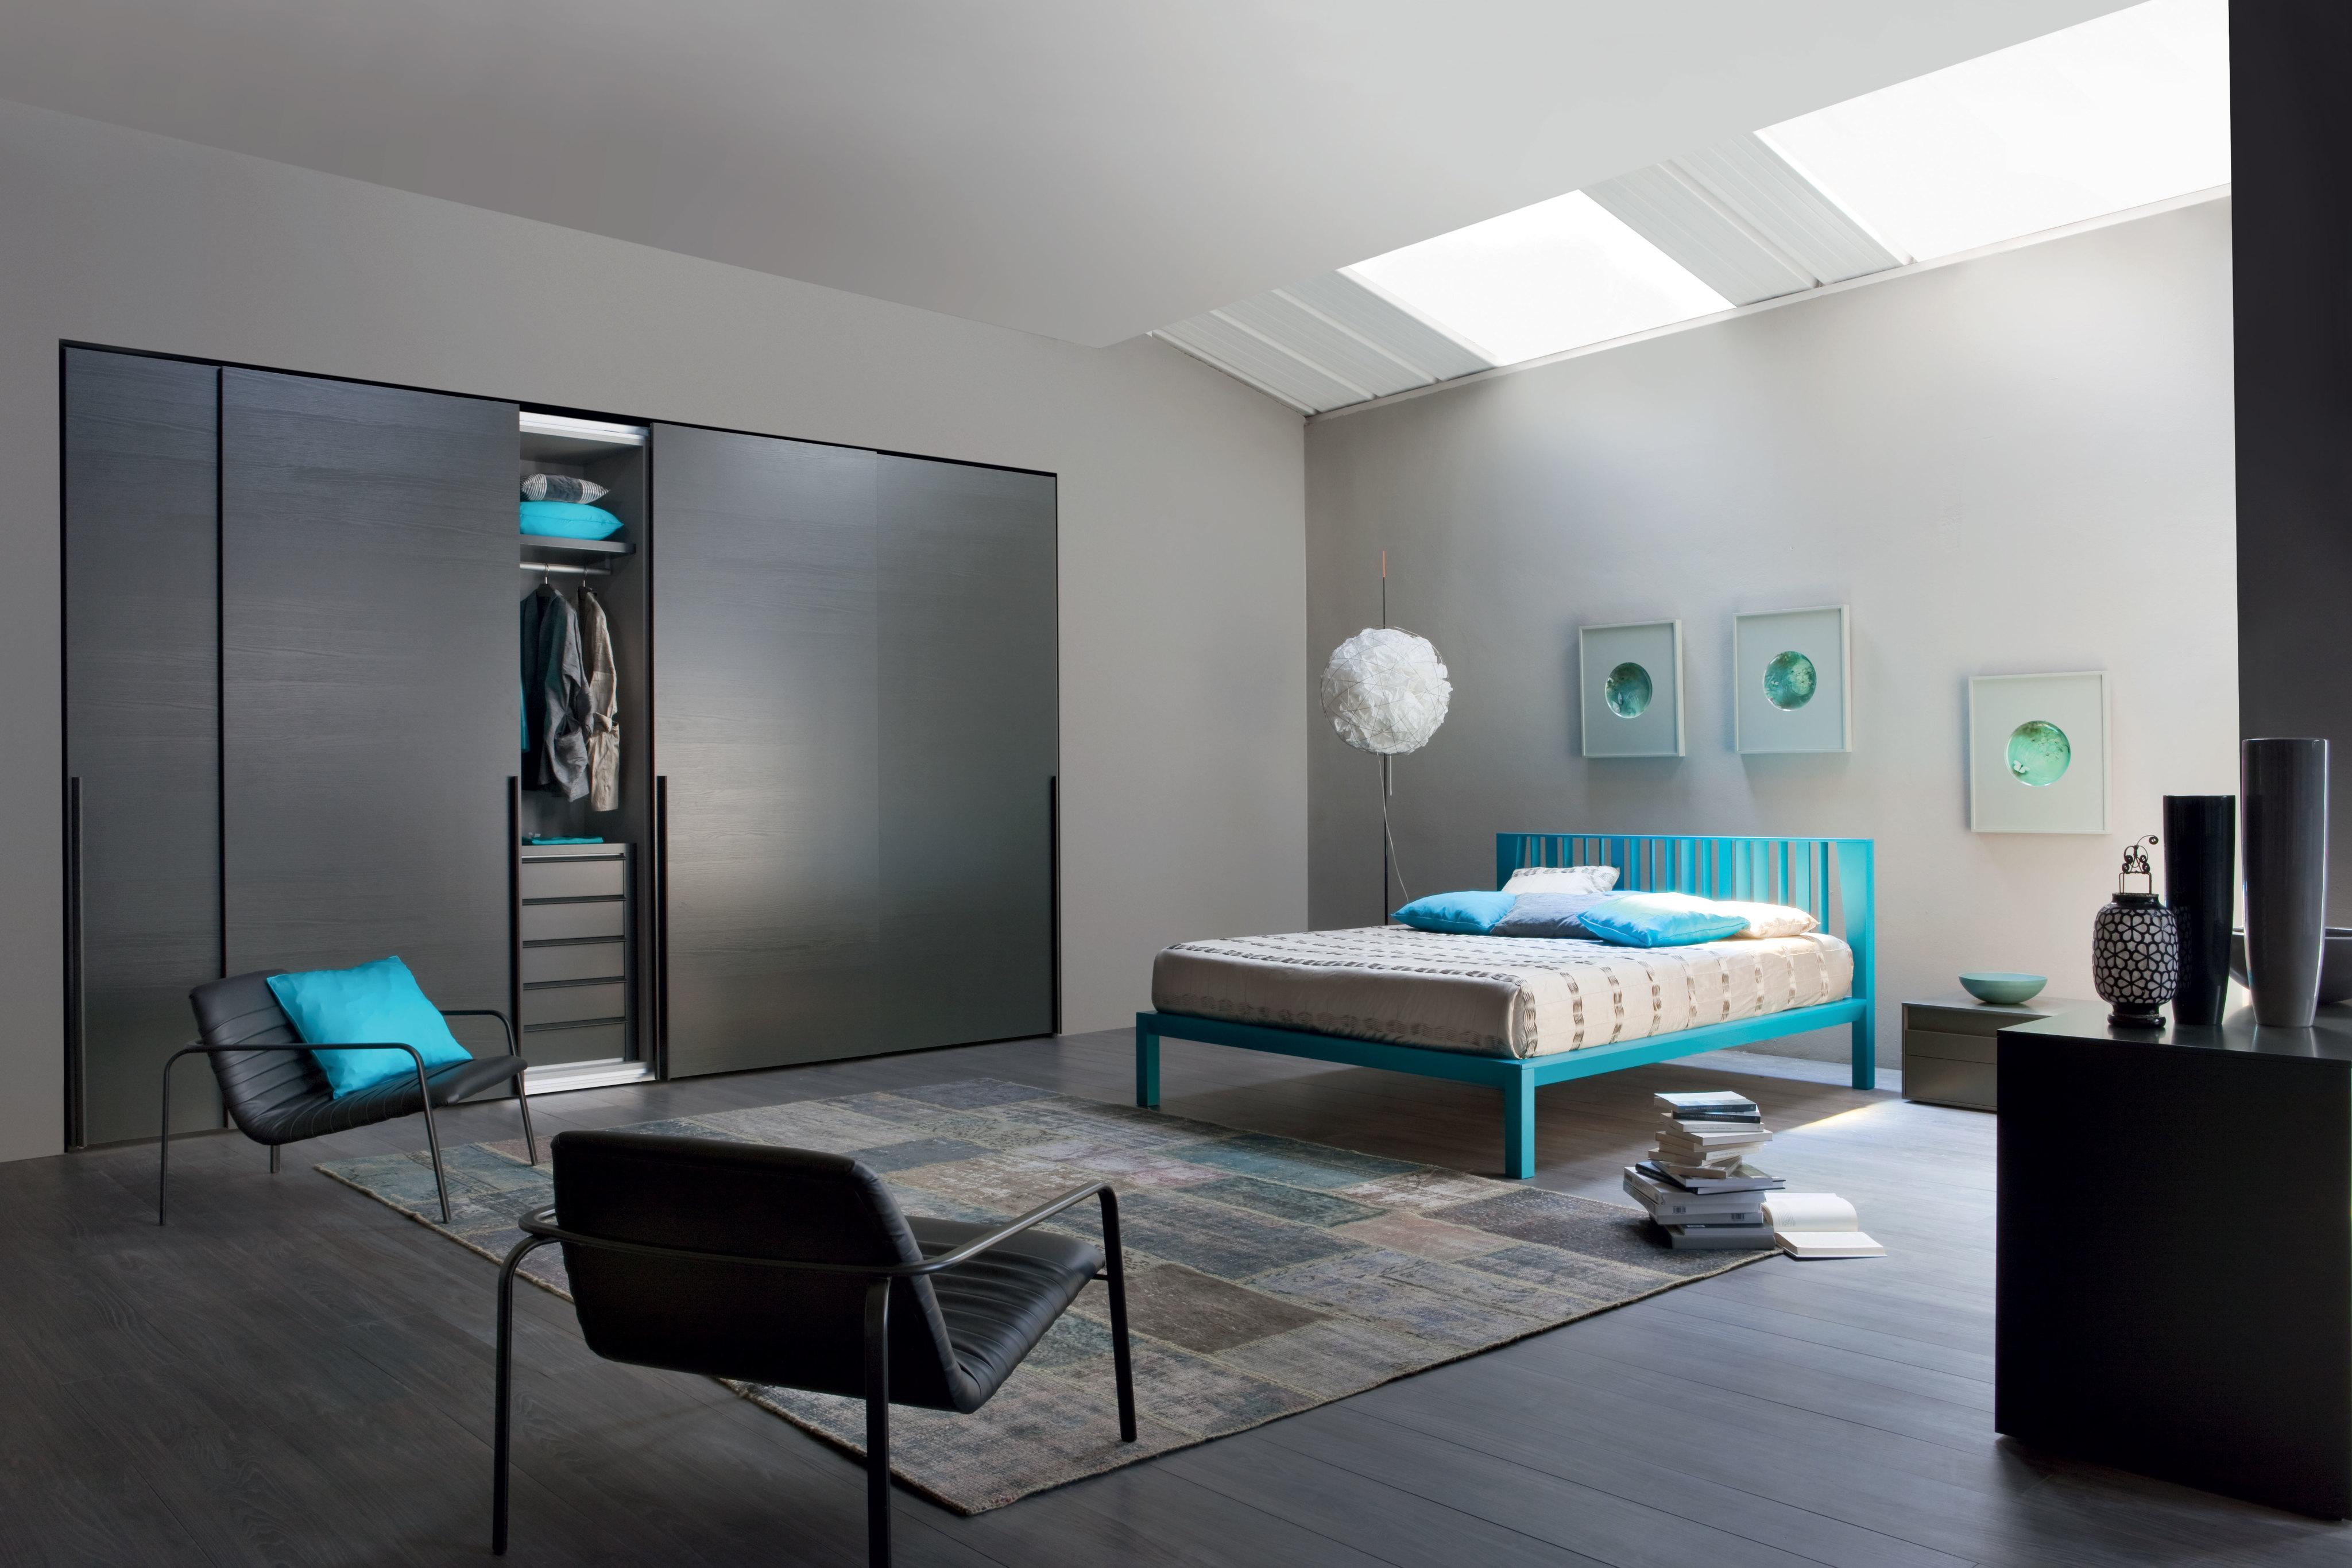 Schlafzimmer mit Türksen Details #bett #schrank #kommode #nachttisch #kleiderschrank ©Livarea.de